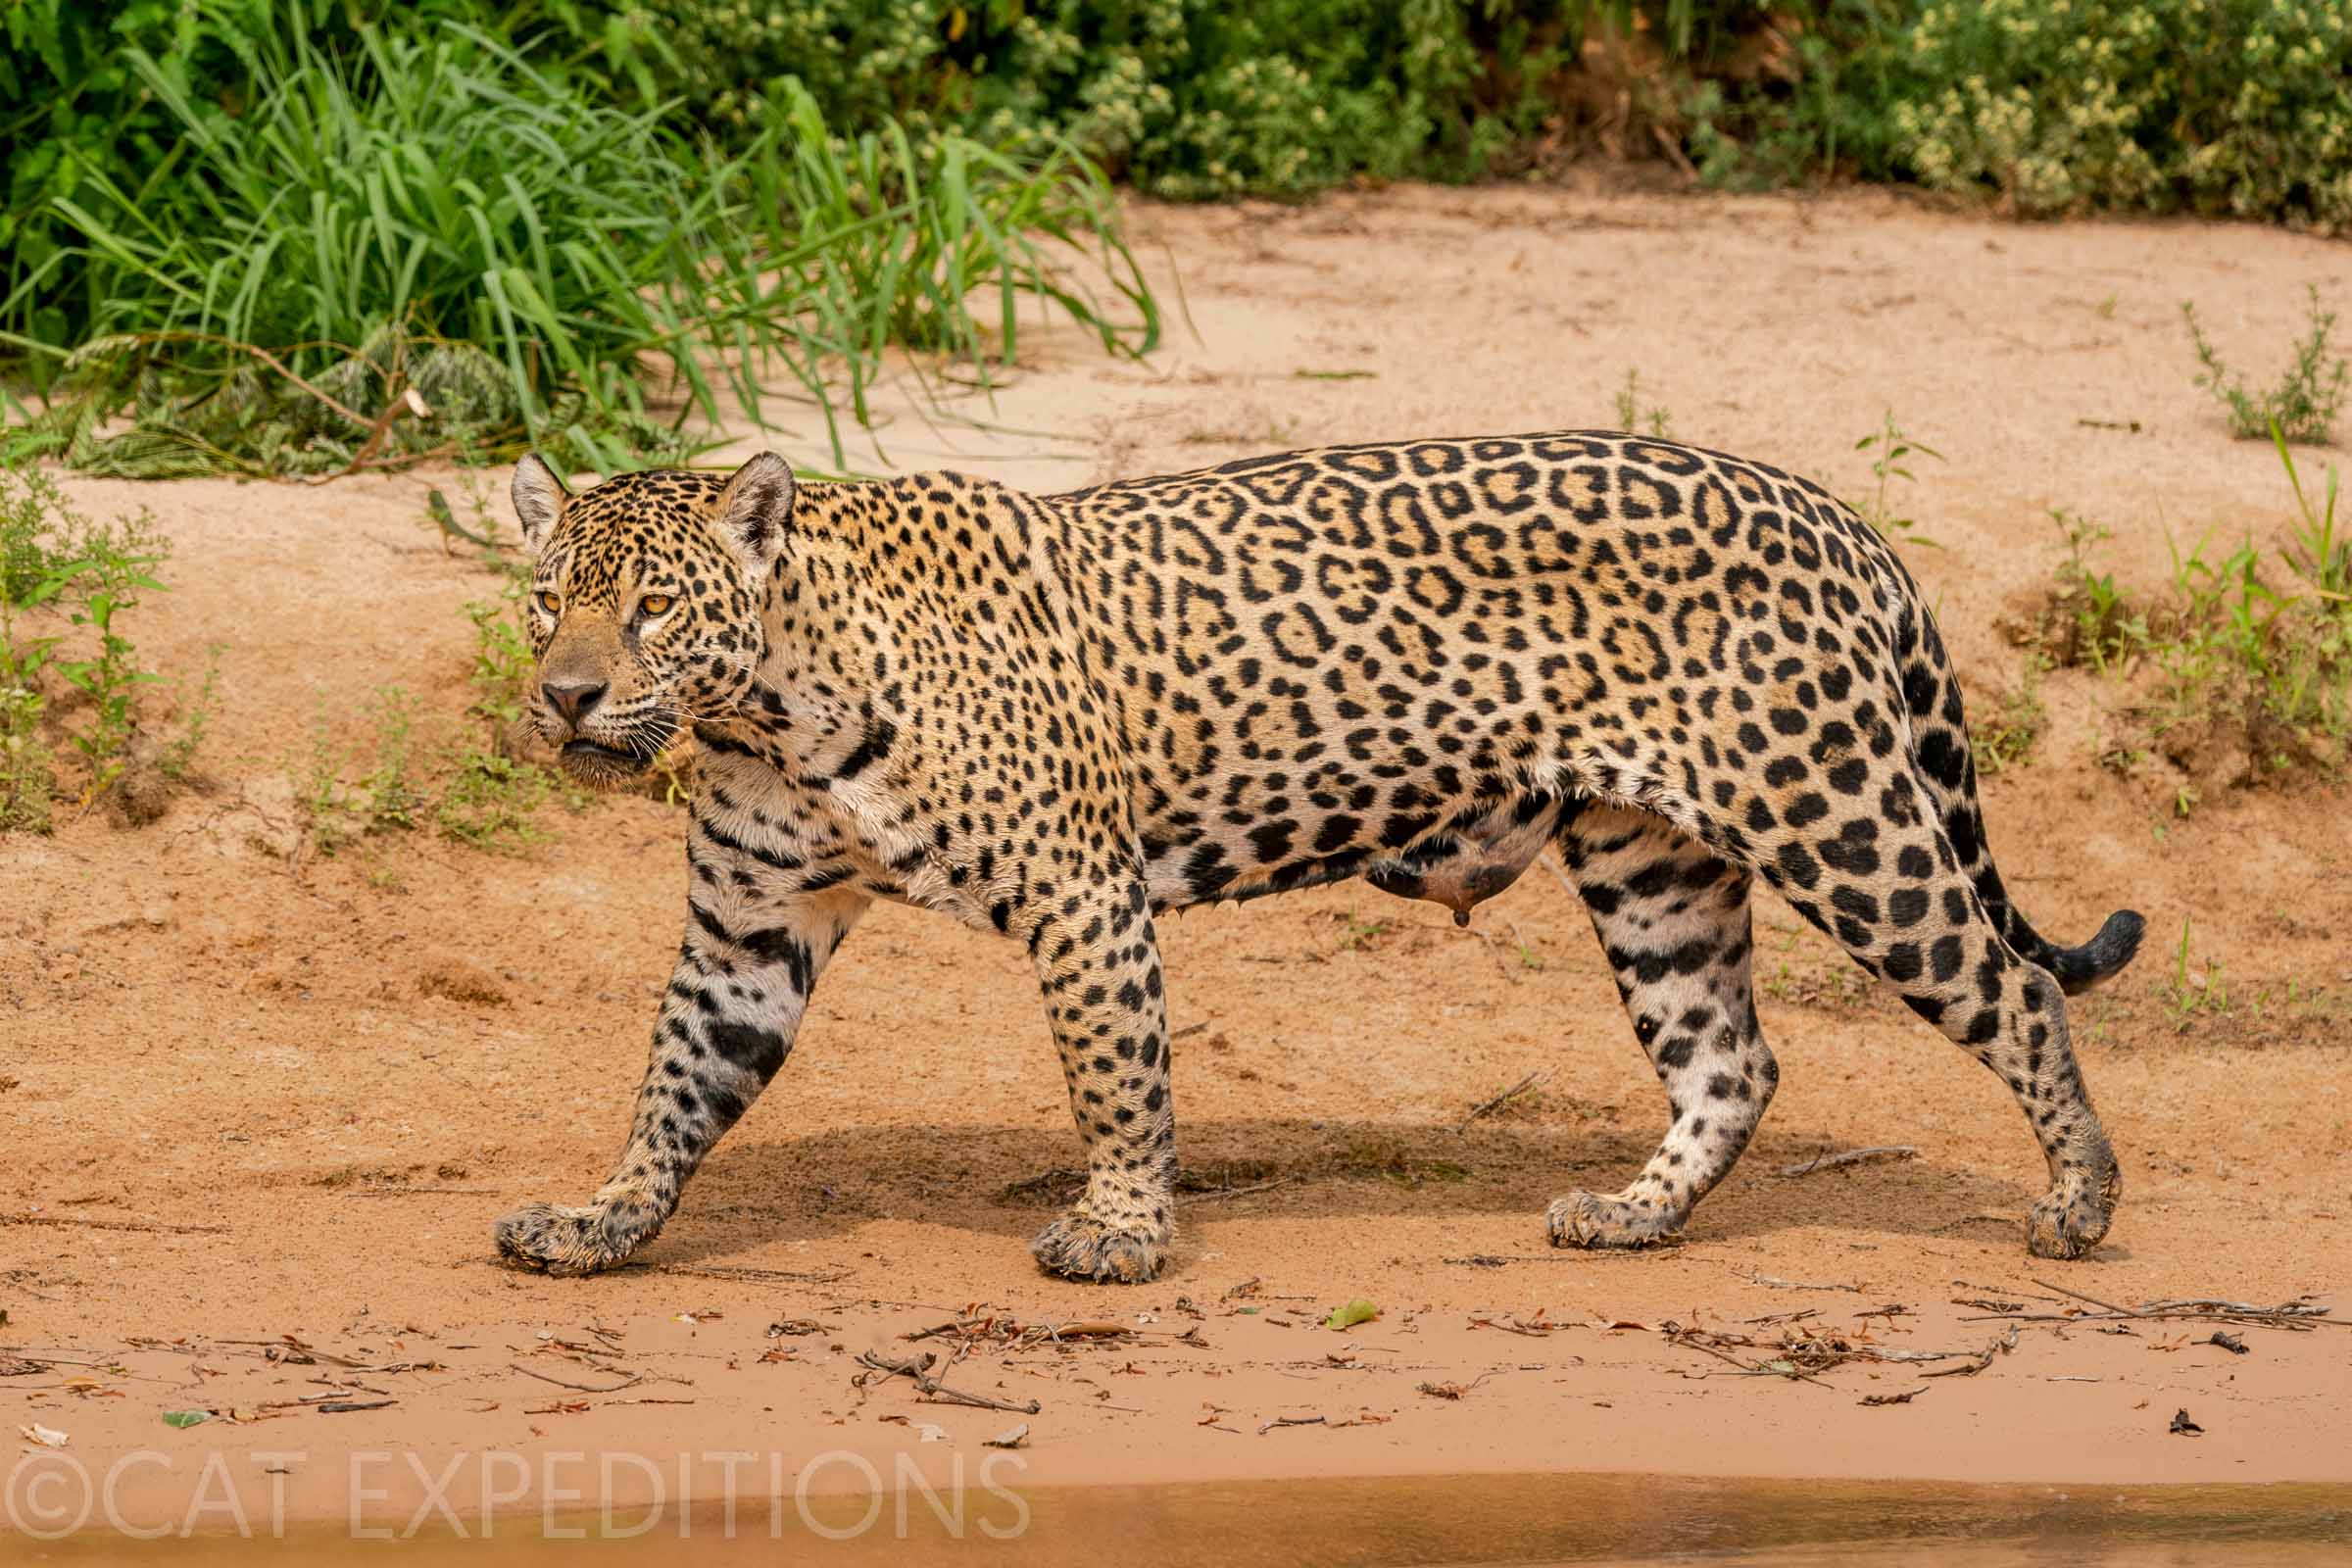 Female jaguar called Medrosa